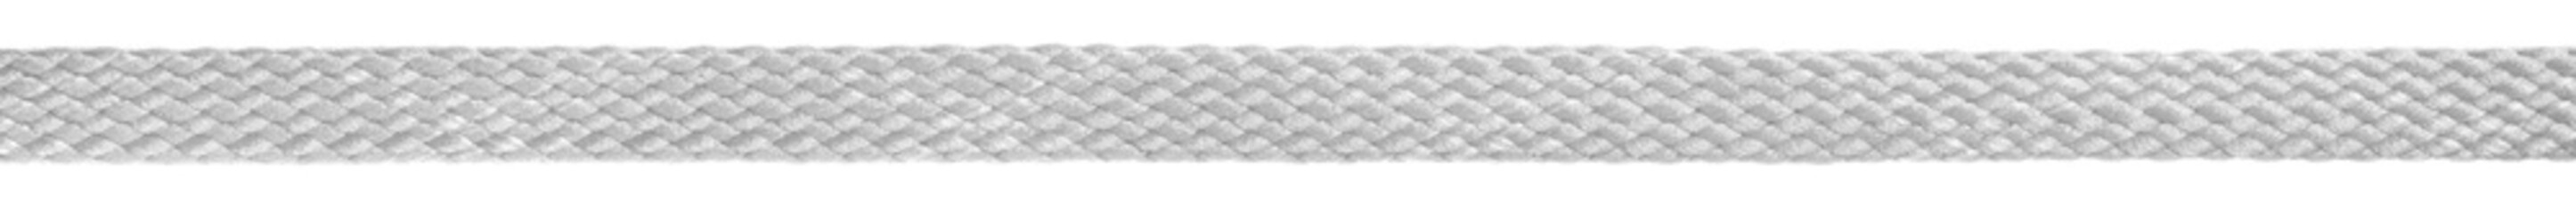 White fabric shoelaces isolated on white background. close-up